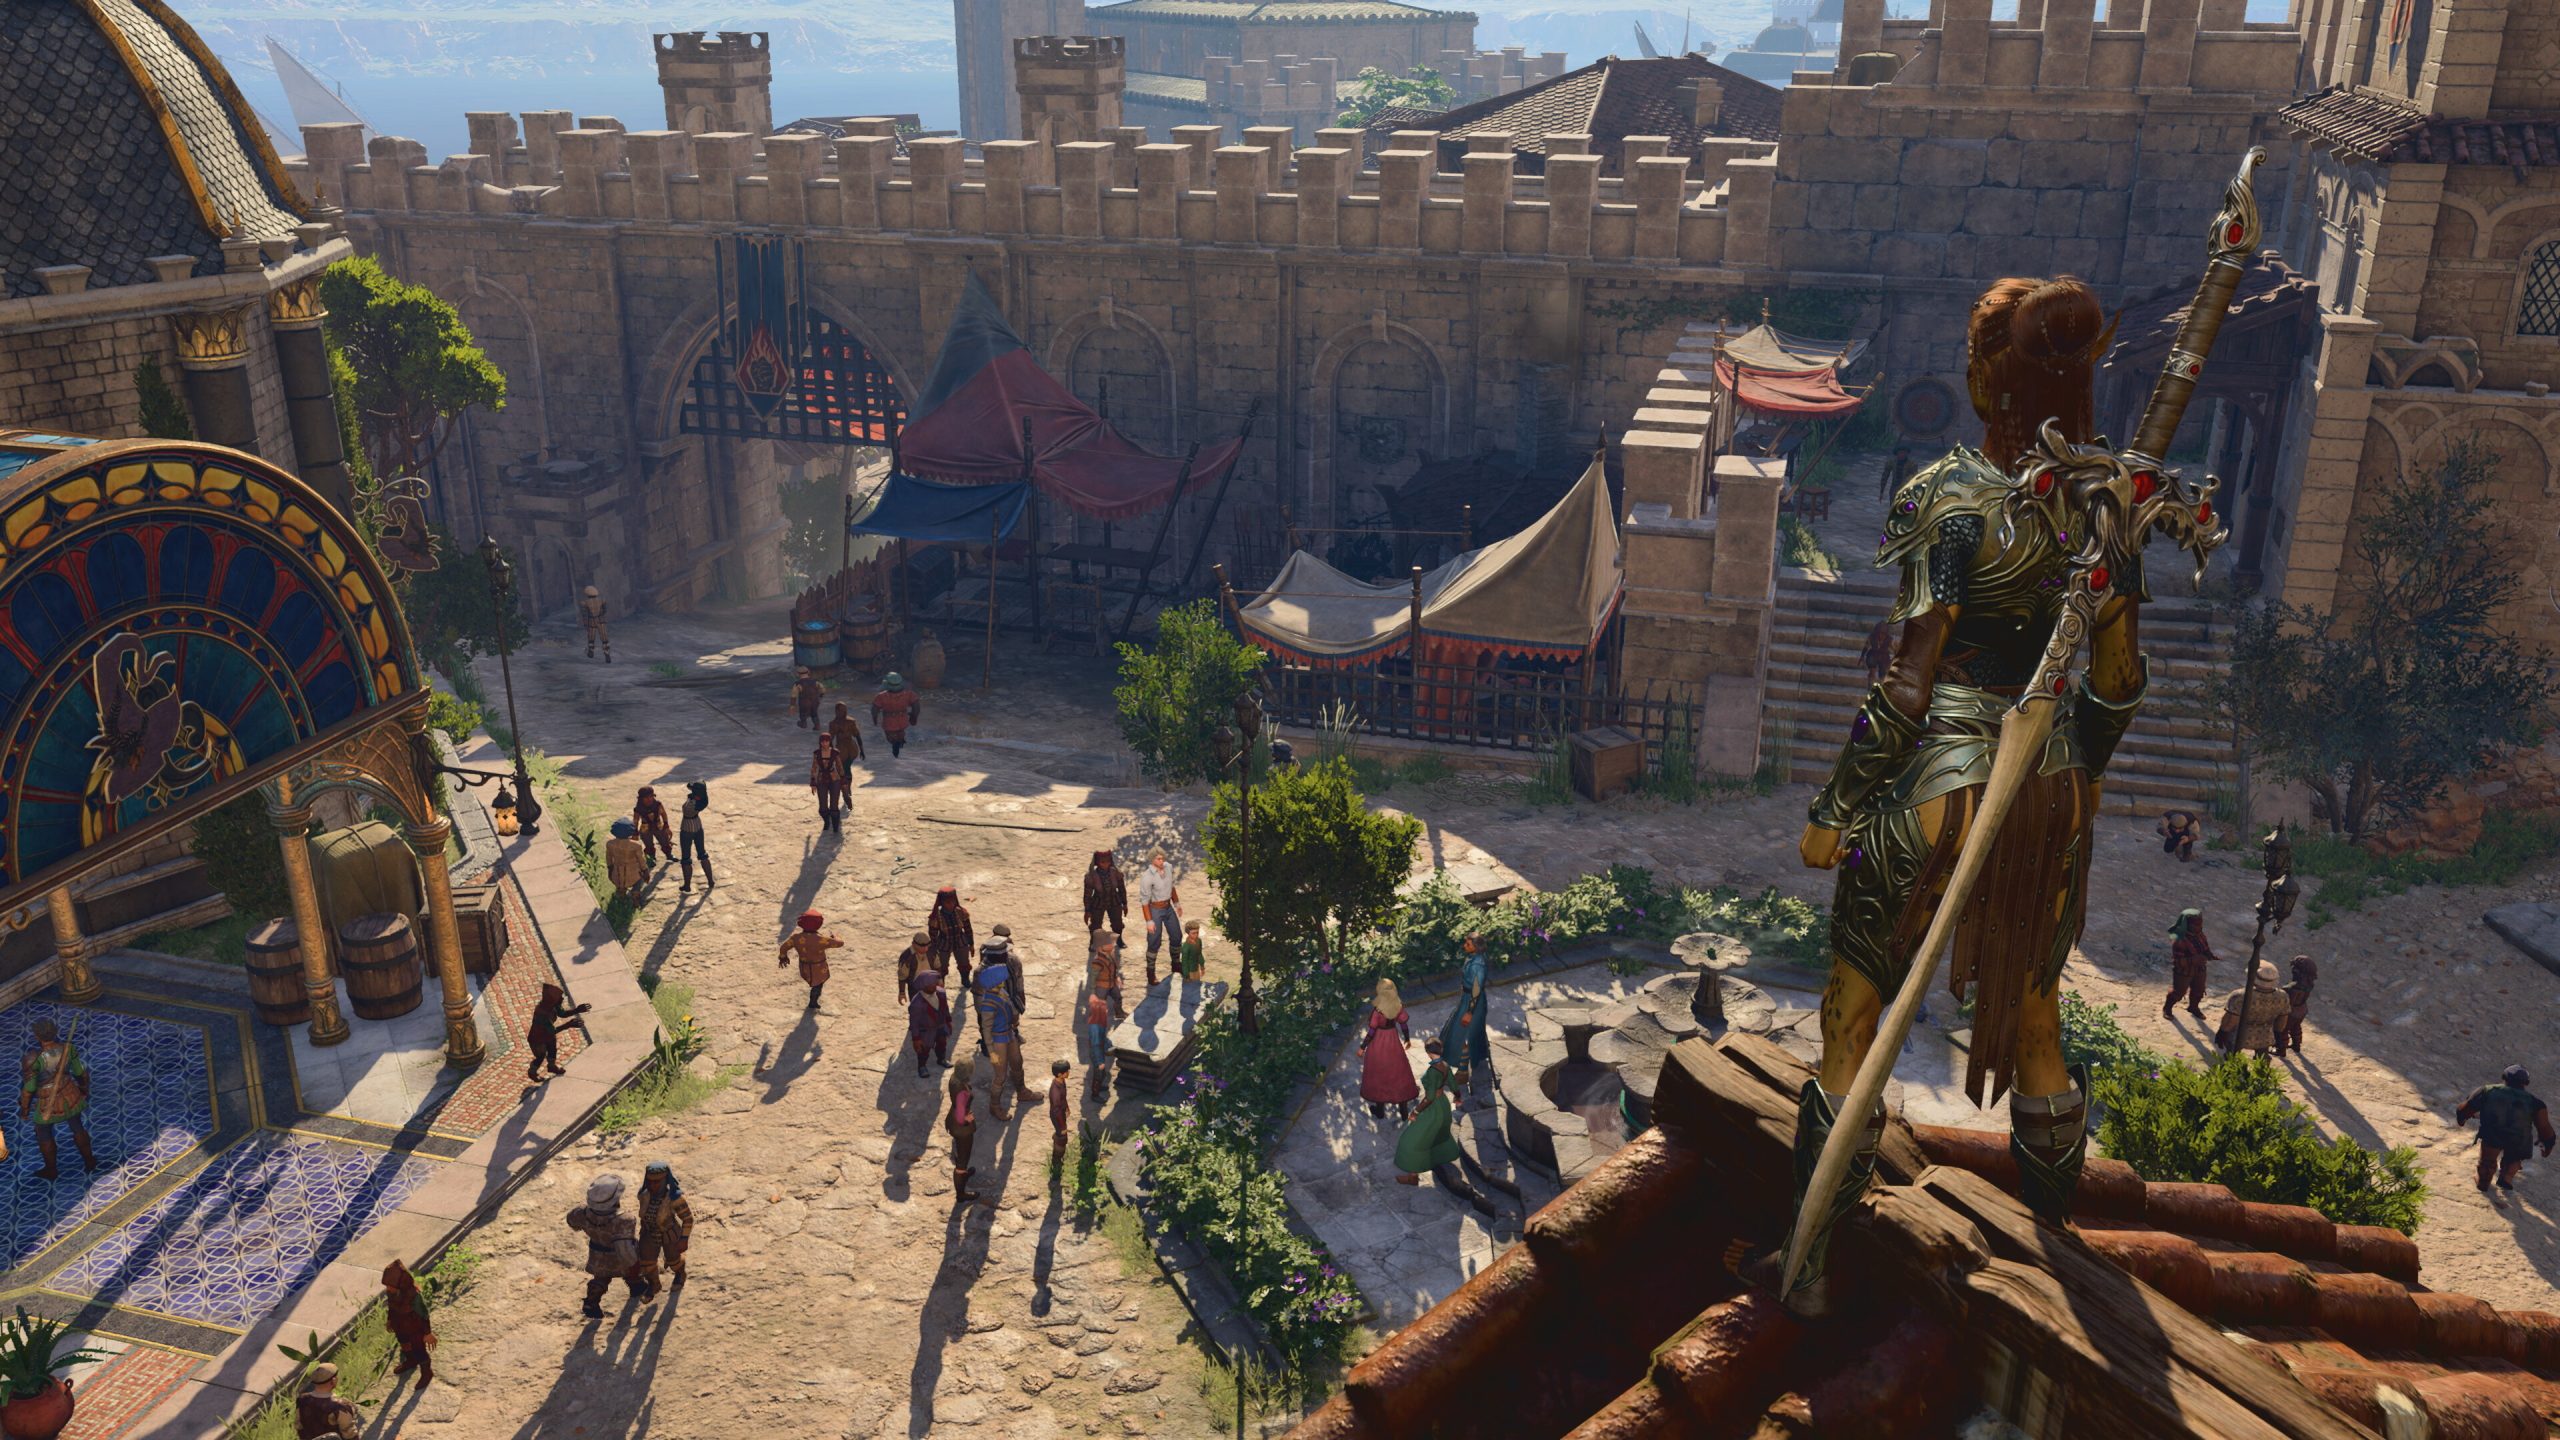 A screenshot from Baldur's Gate 3